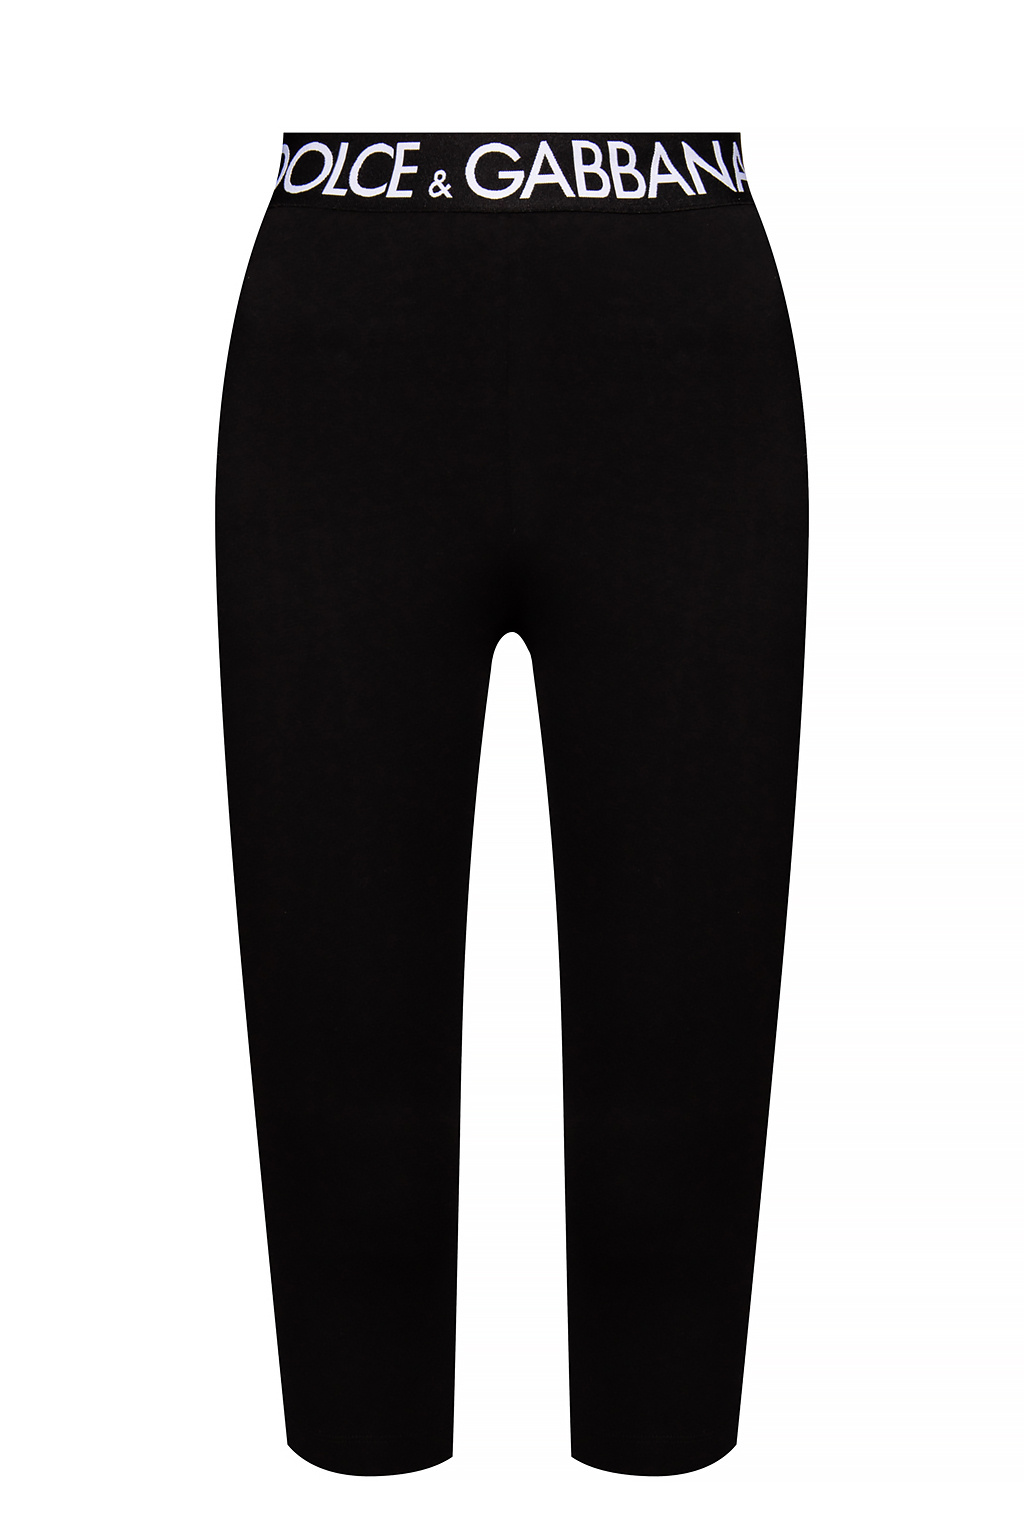 Dolce & Gabbana Geometric Print Cotton Jogging Pants